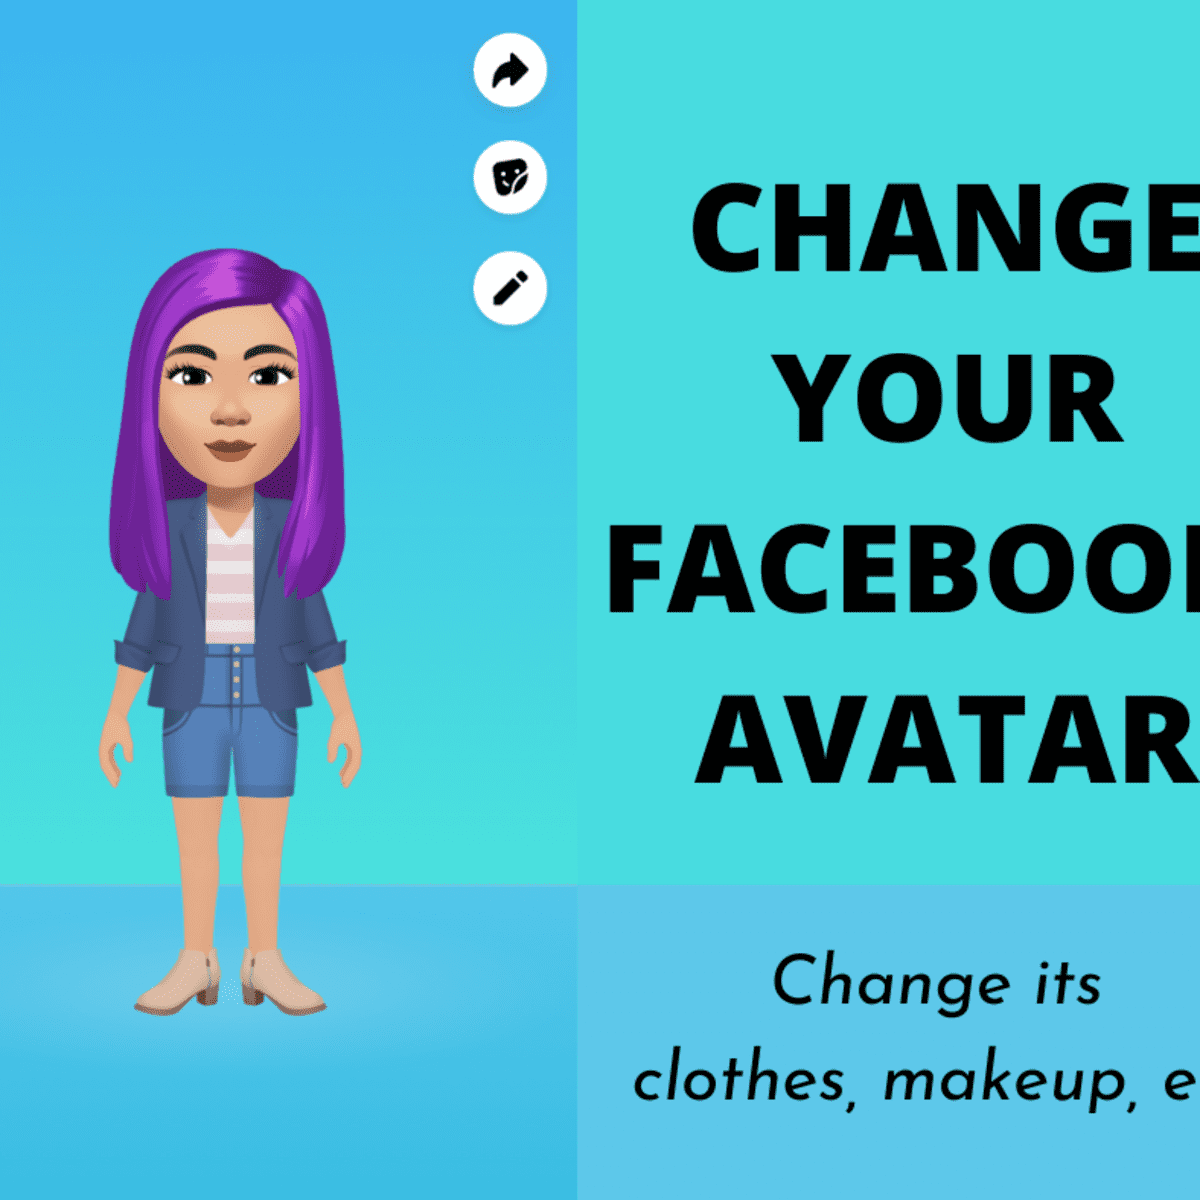 Chuyển đổi sang Avatar x Facebook để trải nghiệm những tính năng mới lạ đang được ưa chuộng trong cộng đồng mạng. Với những bức ảnh đậm chất cá tính, bạn sẽ thu hút được sự chú ý của hàng triệu người dùng Facebook trên toàn thế giới.